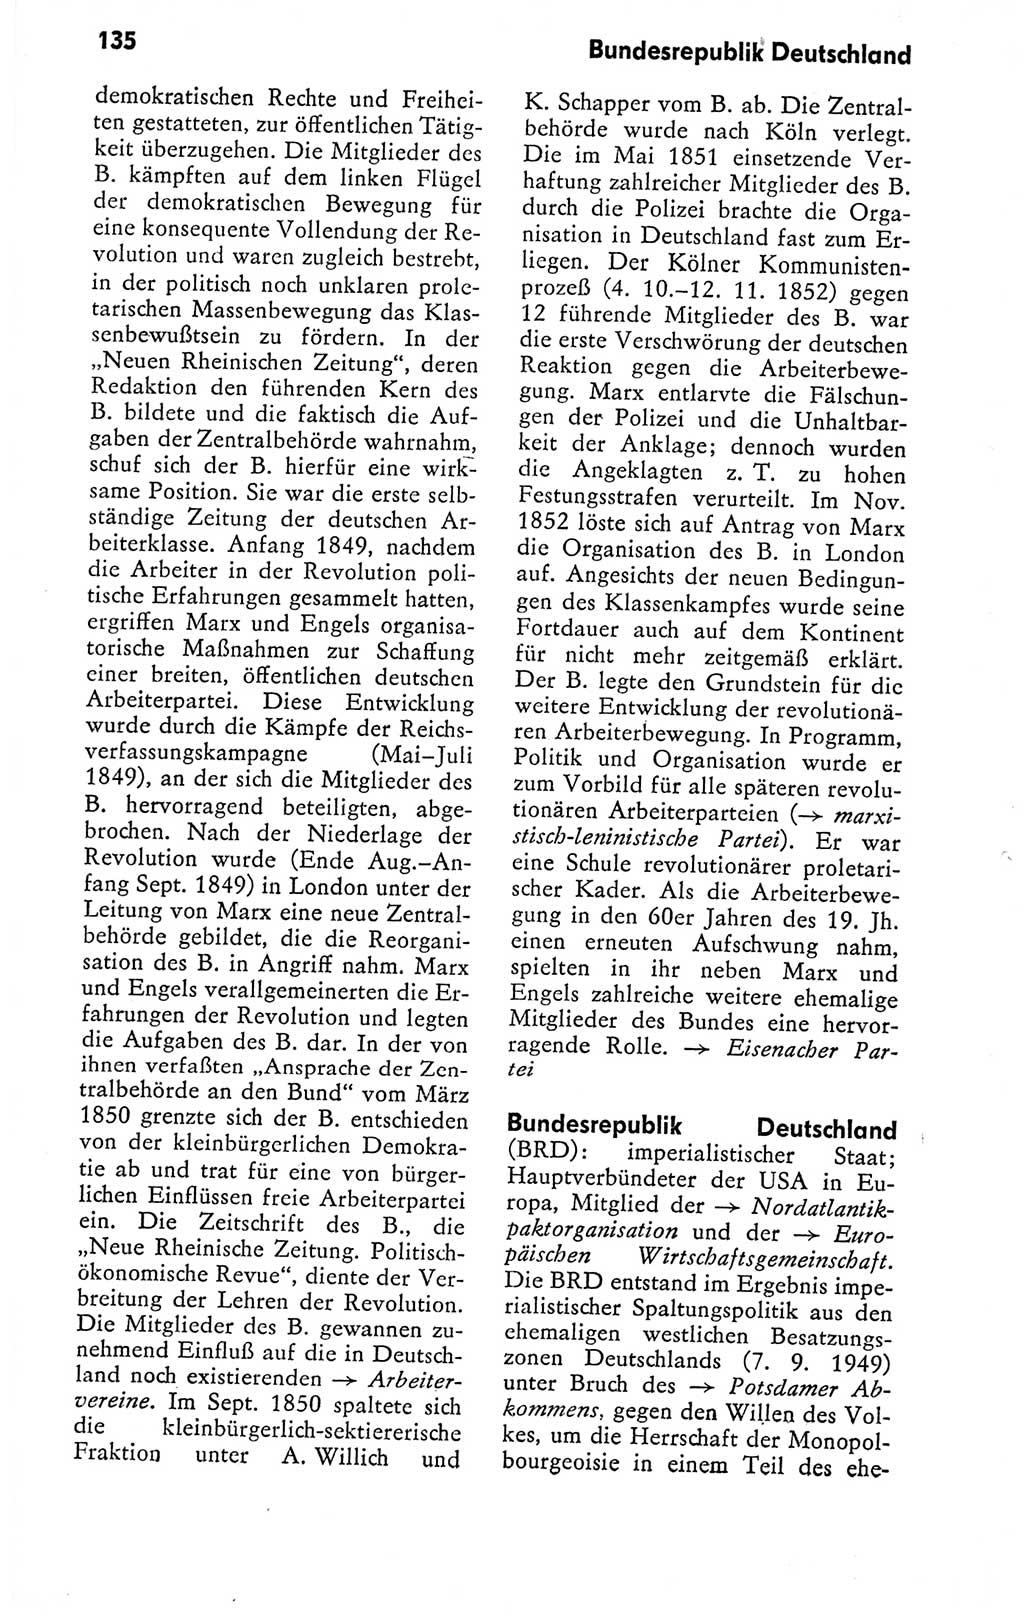 Kleines politisches Wörterbuch [Deutsche Demokratische Republik (DDR)] 1978, Seite 135 (Kl. pol. Wb. DDR 1978, S. 135)